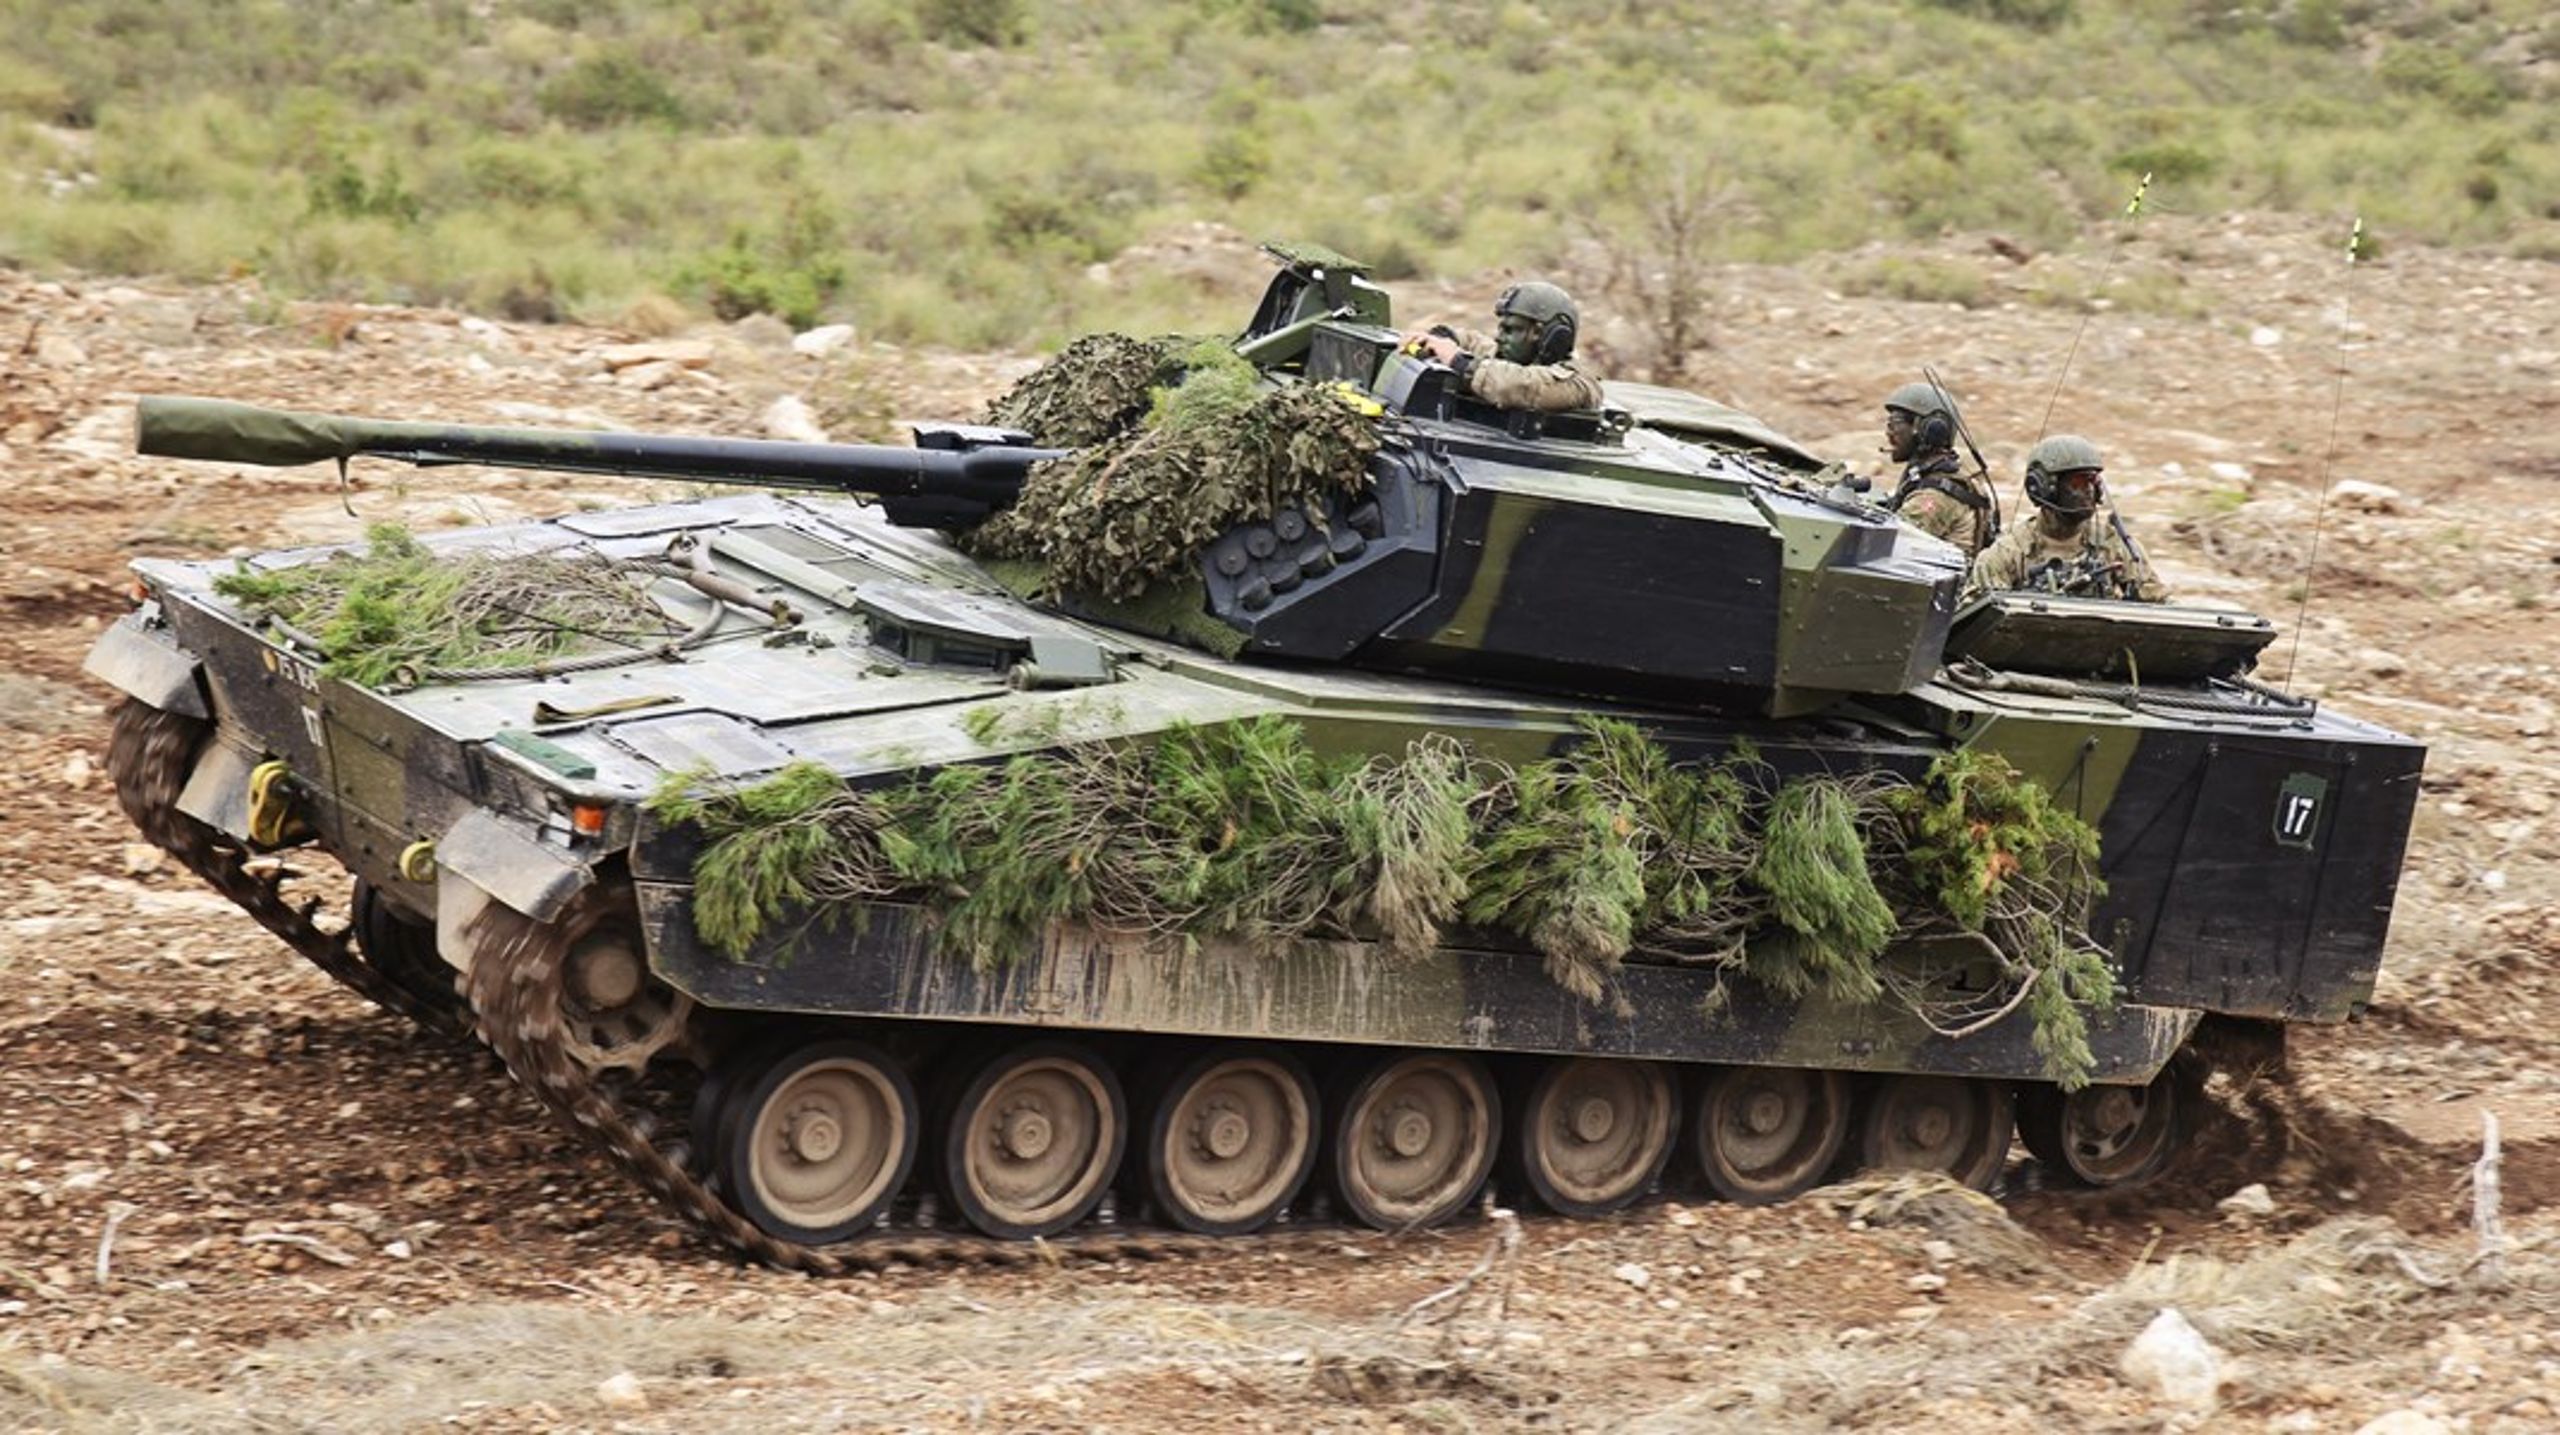 Danmark har i dag 44 CV90 infanterikampkøretøjer. Nu køber vi sandsynligvis snart 115 flere.